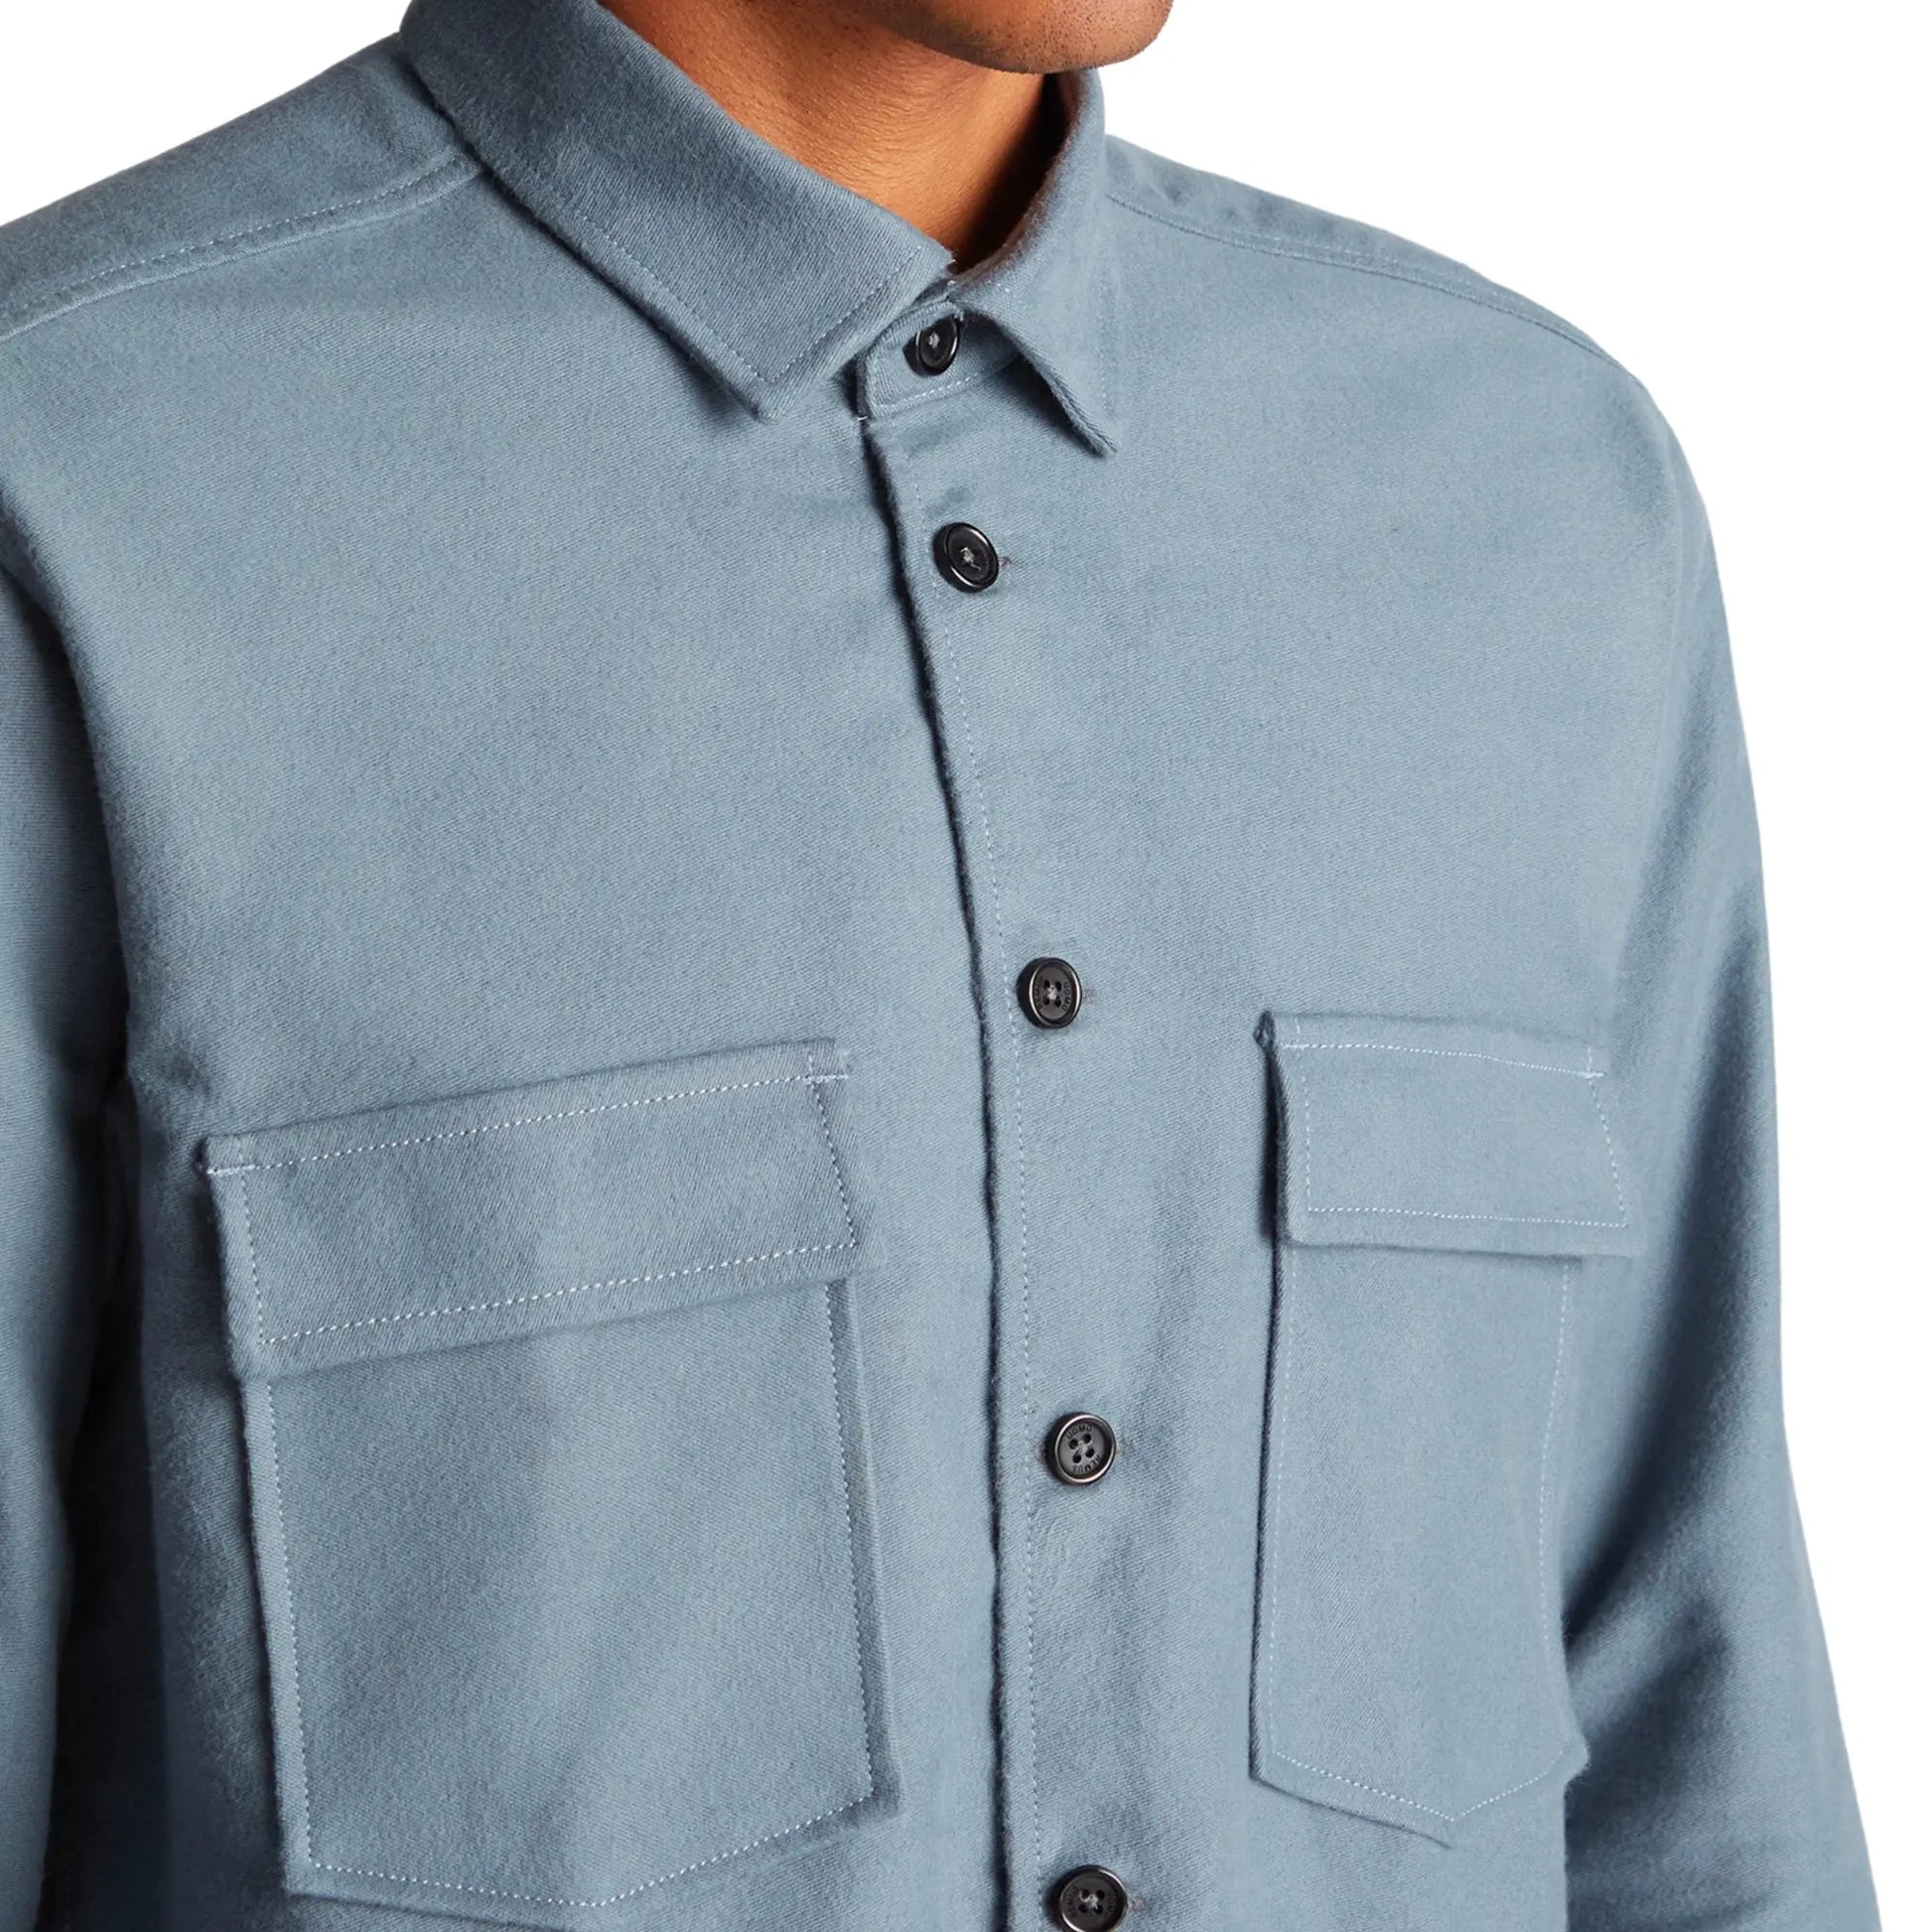 Buy Remus Uomo Parker Overshirt - Blue | Overshirtss at Woven Durham